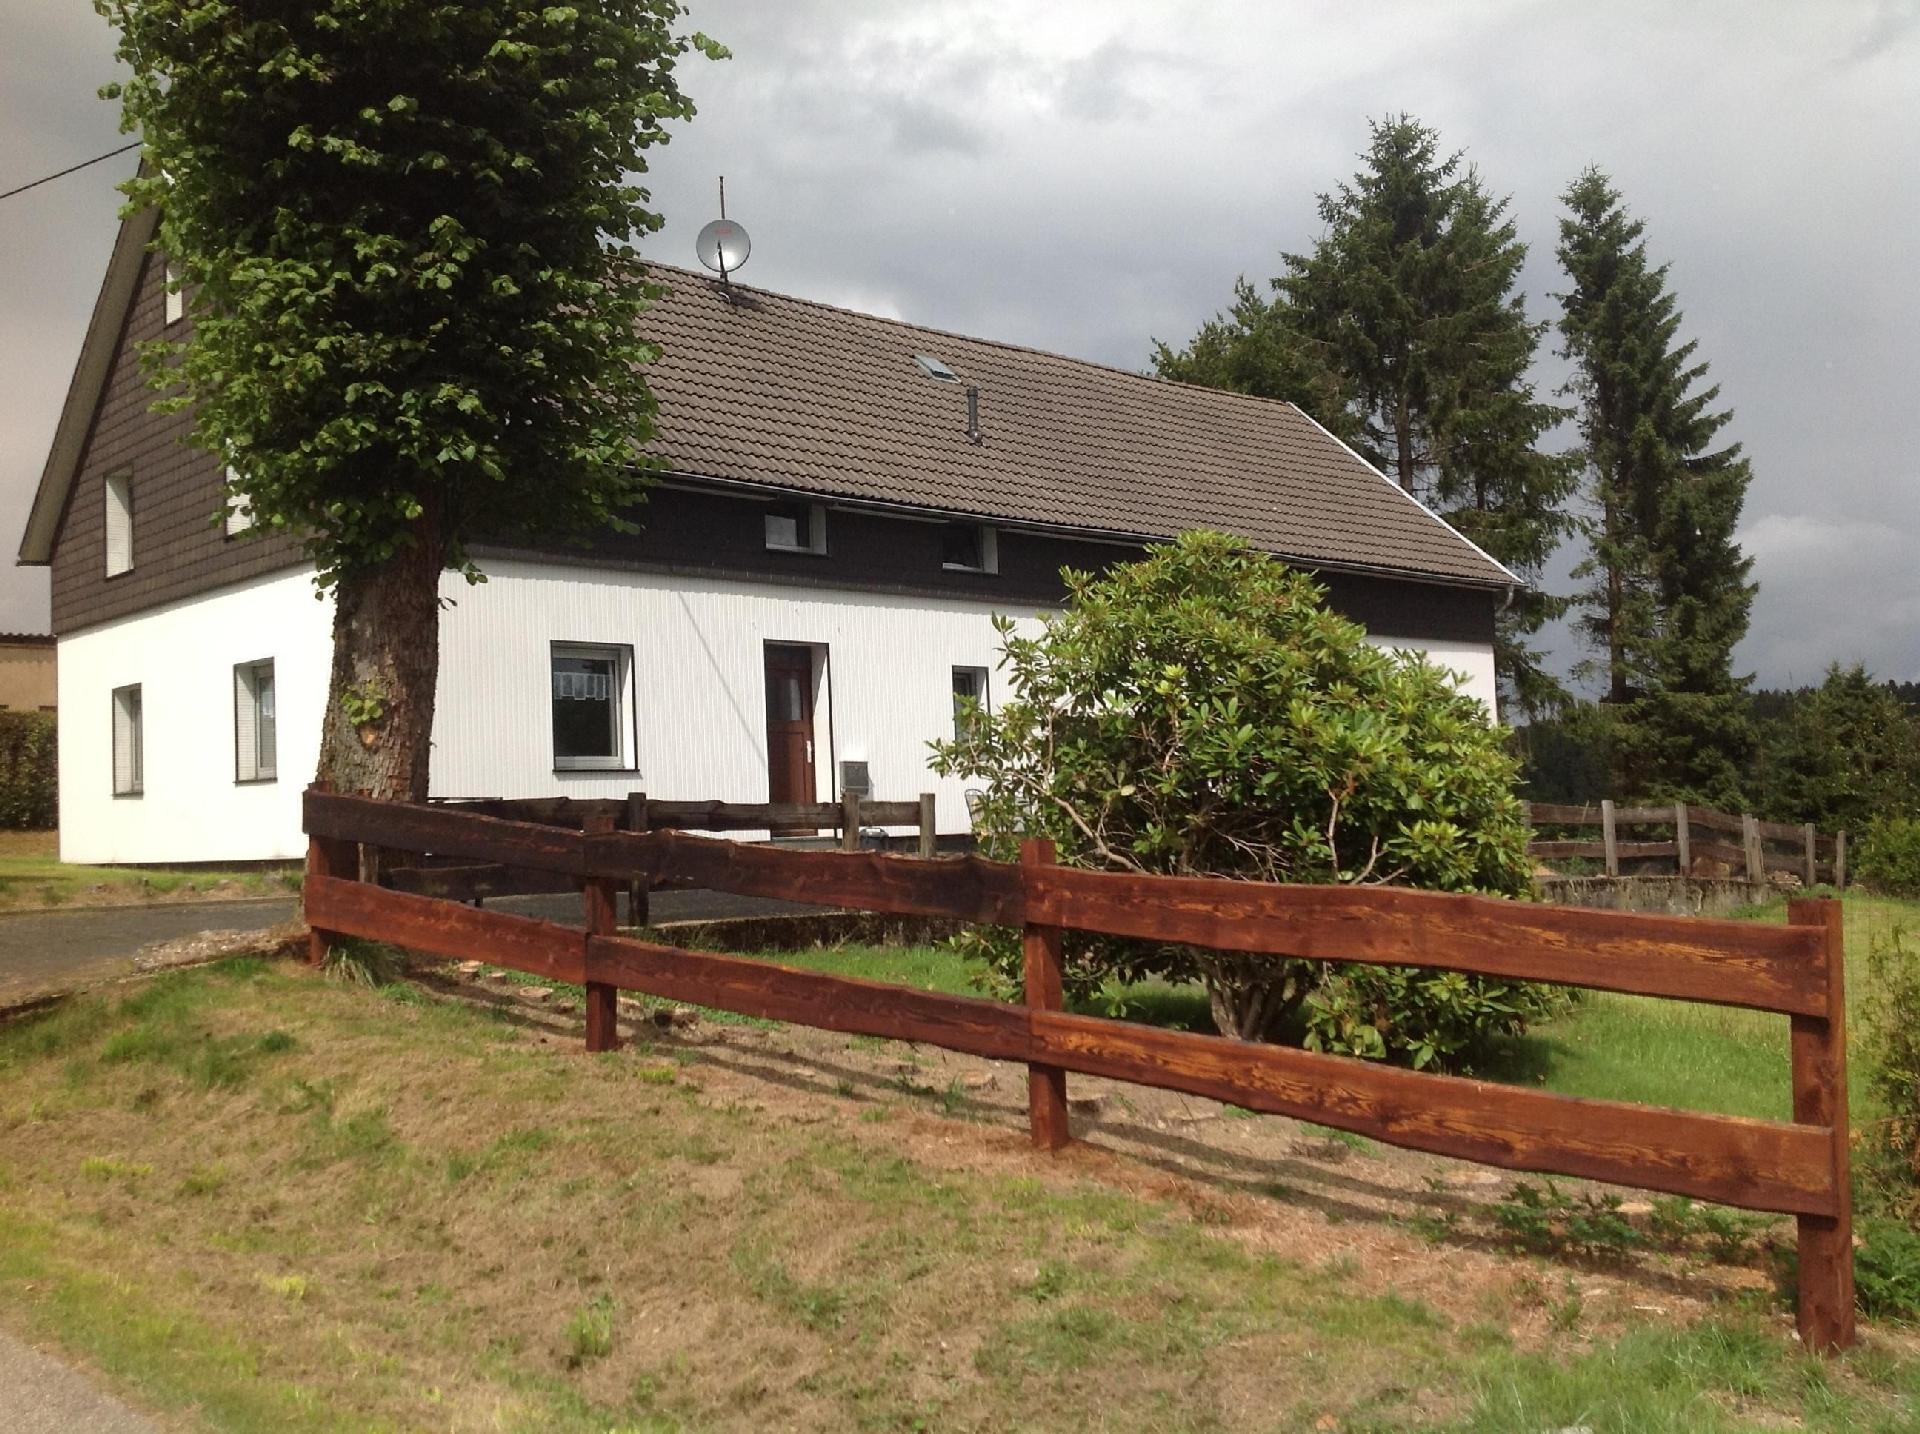 Ferienhaus in Kalterherberg mit Terrasse, Grill un   Eifel in NRW